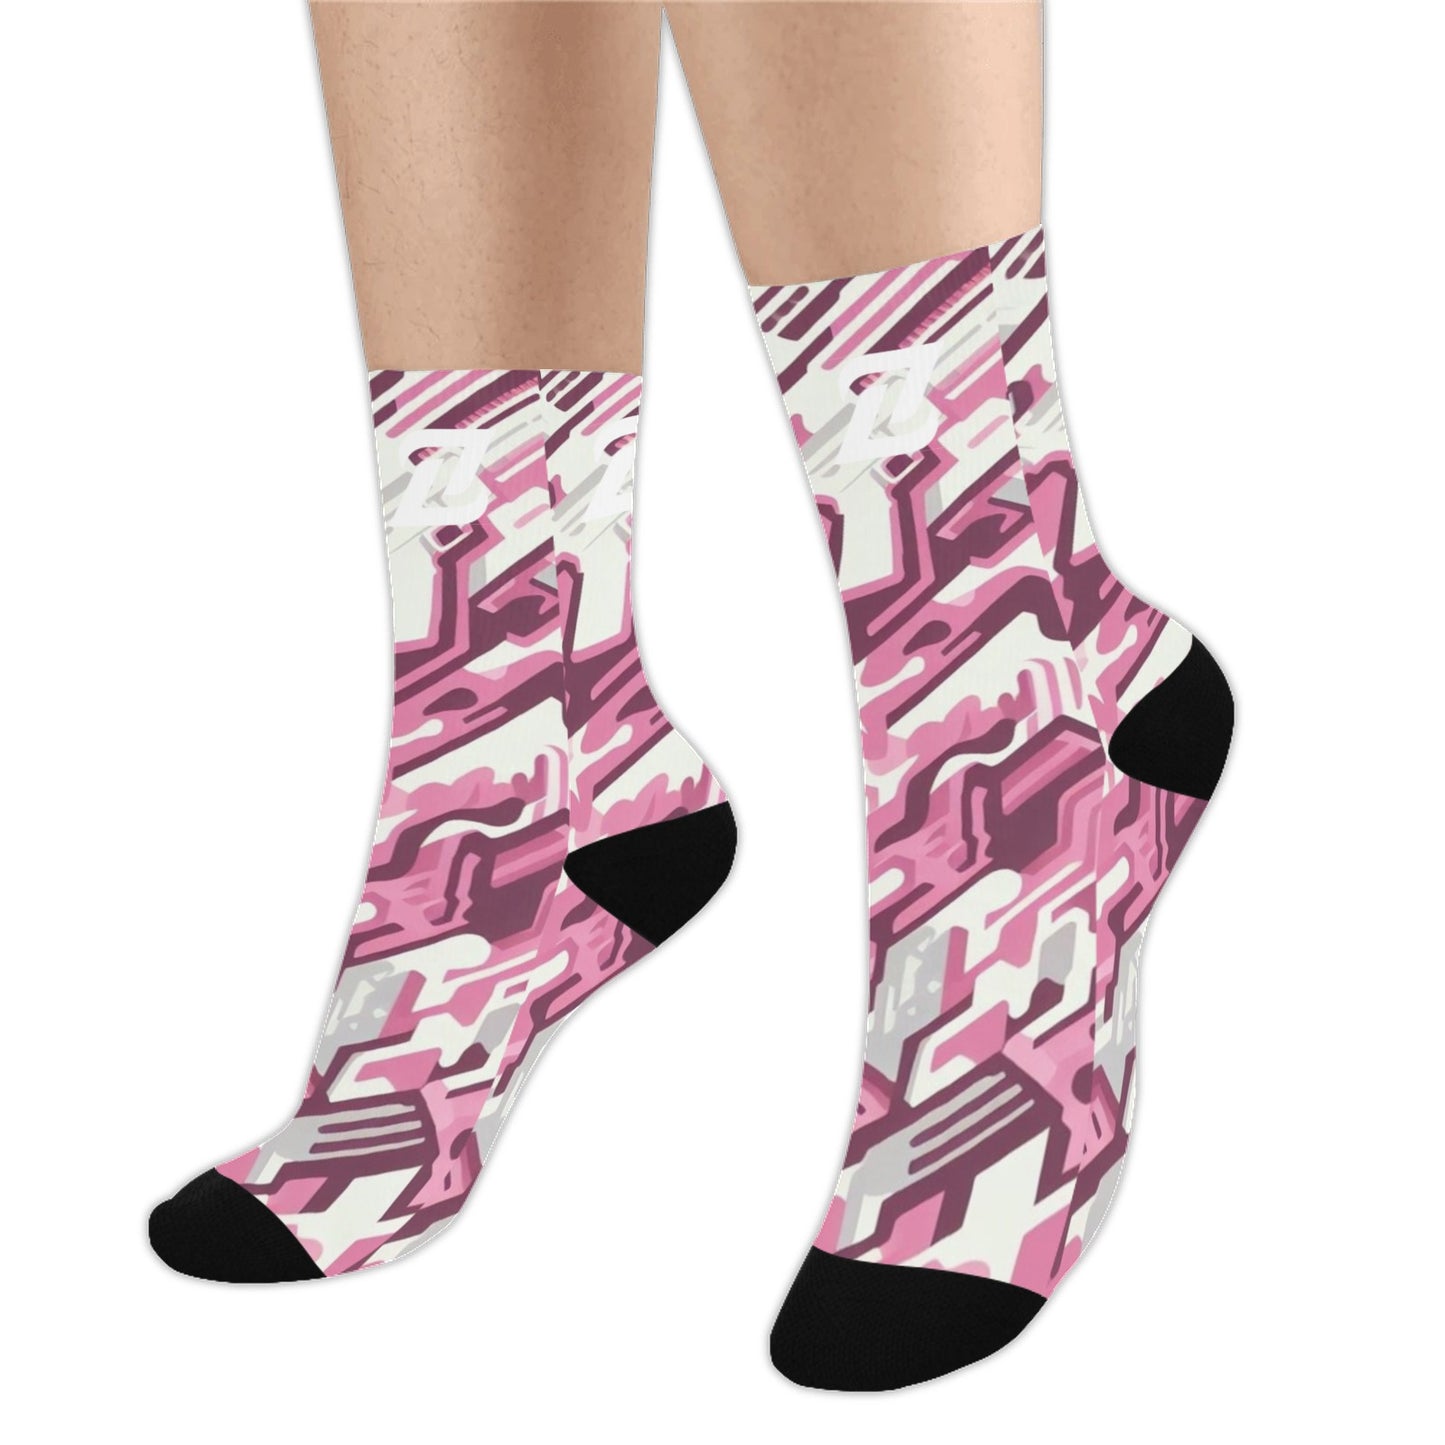 Zen Socks - Pink Camo